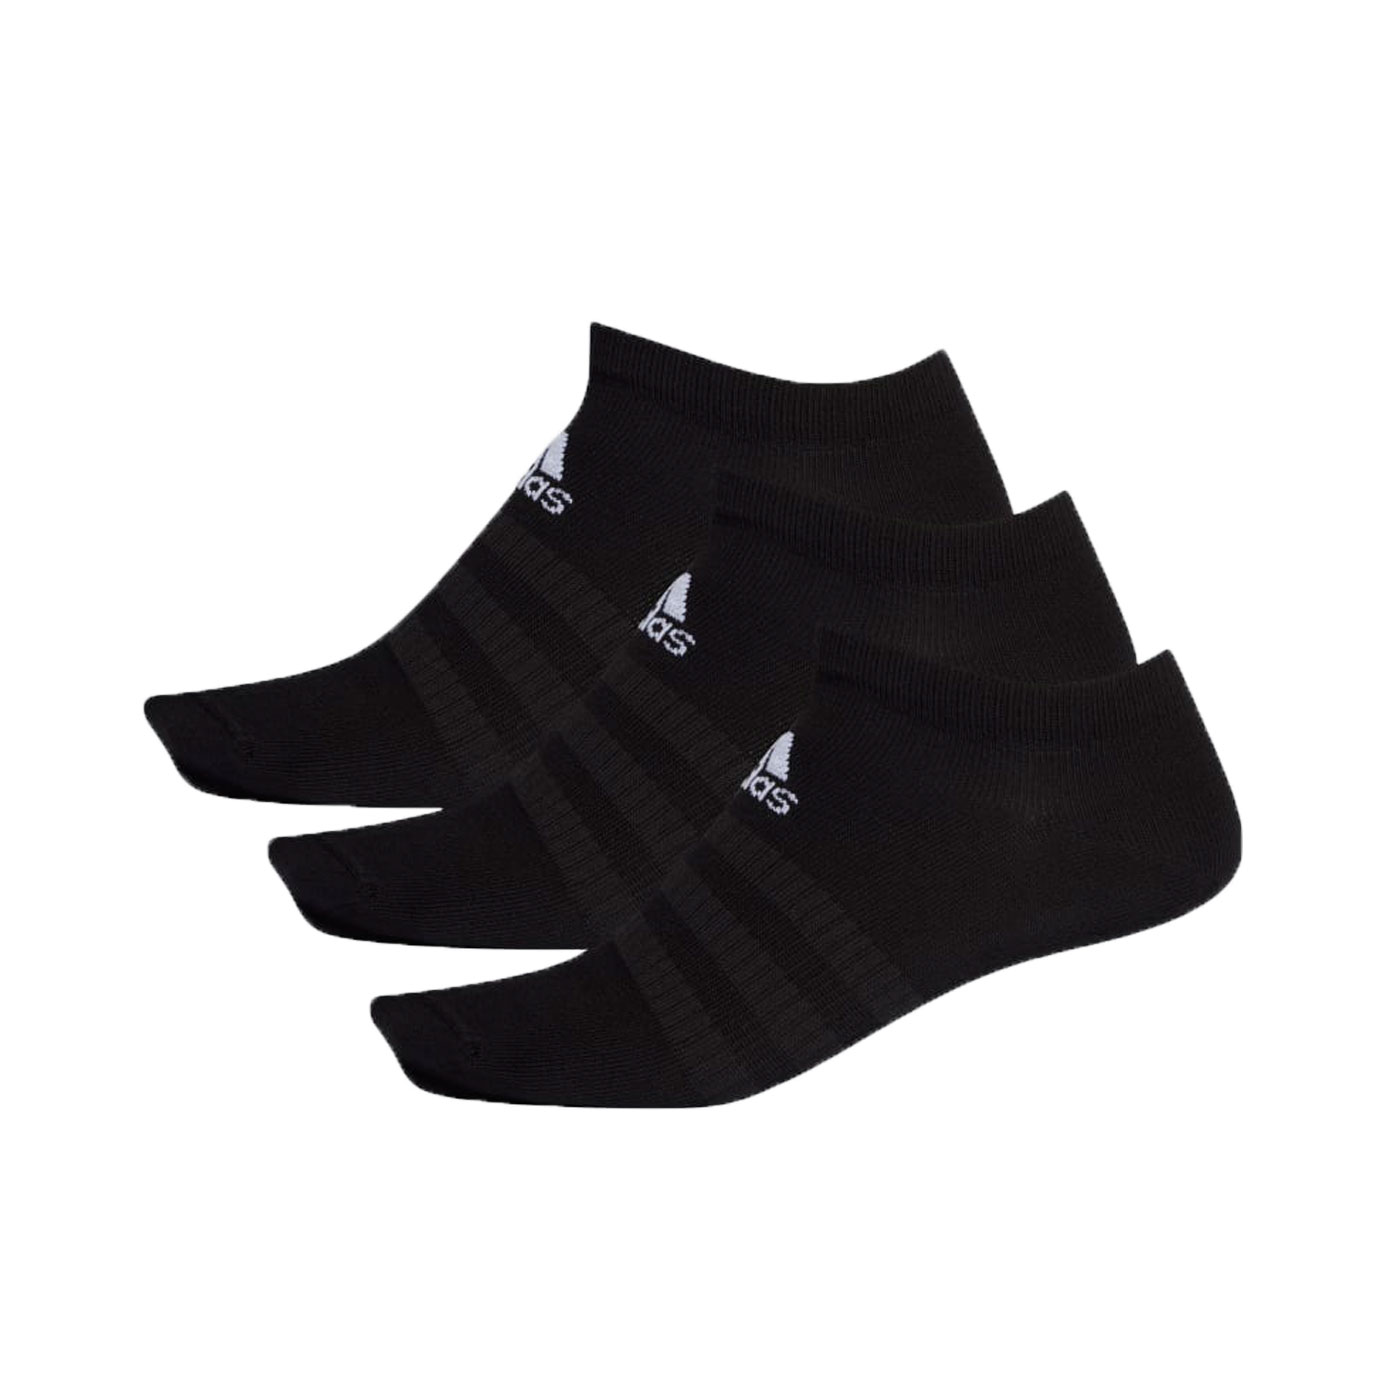 ADIDAS 運動短襪(三雙入) DZ9402 - 黑白